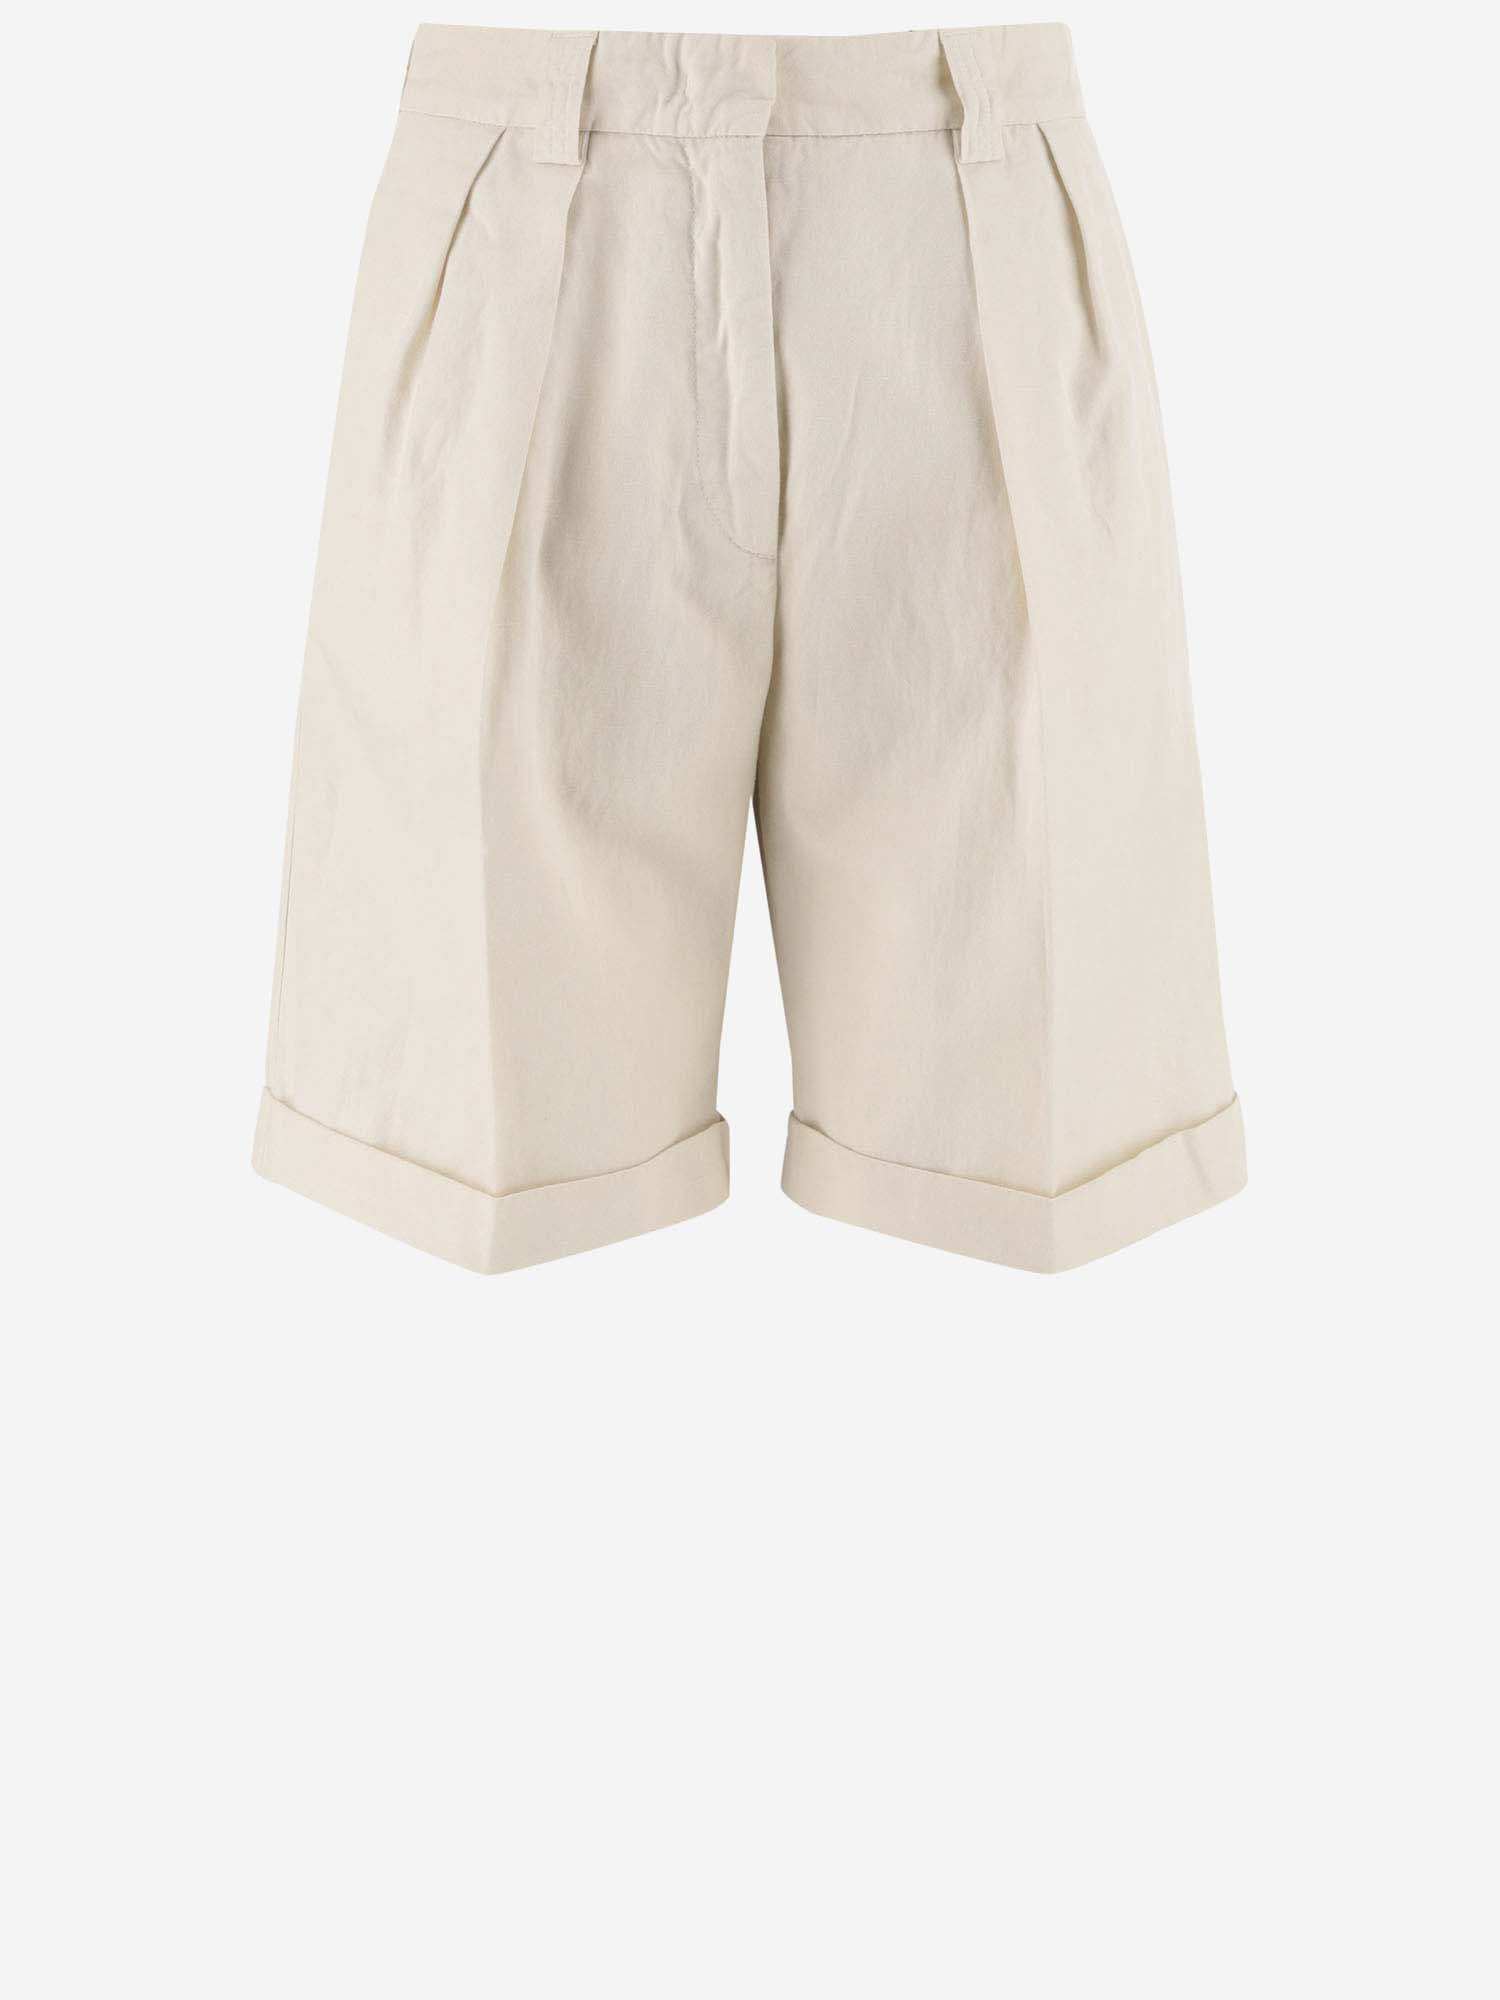 Cotton And Linen Short Pants